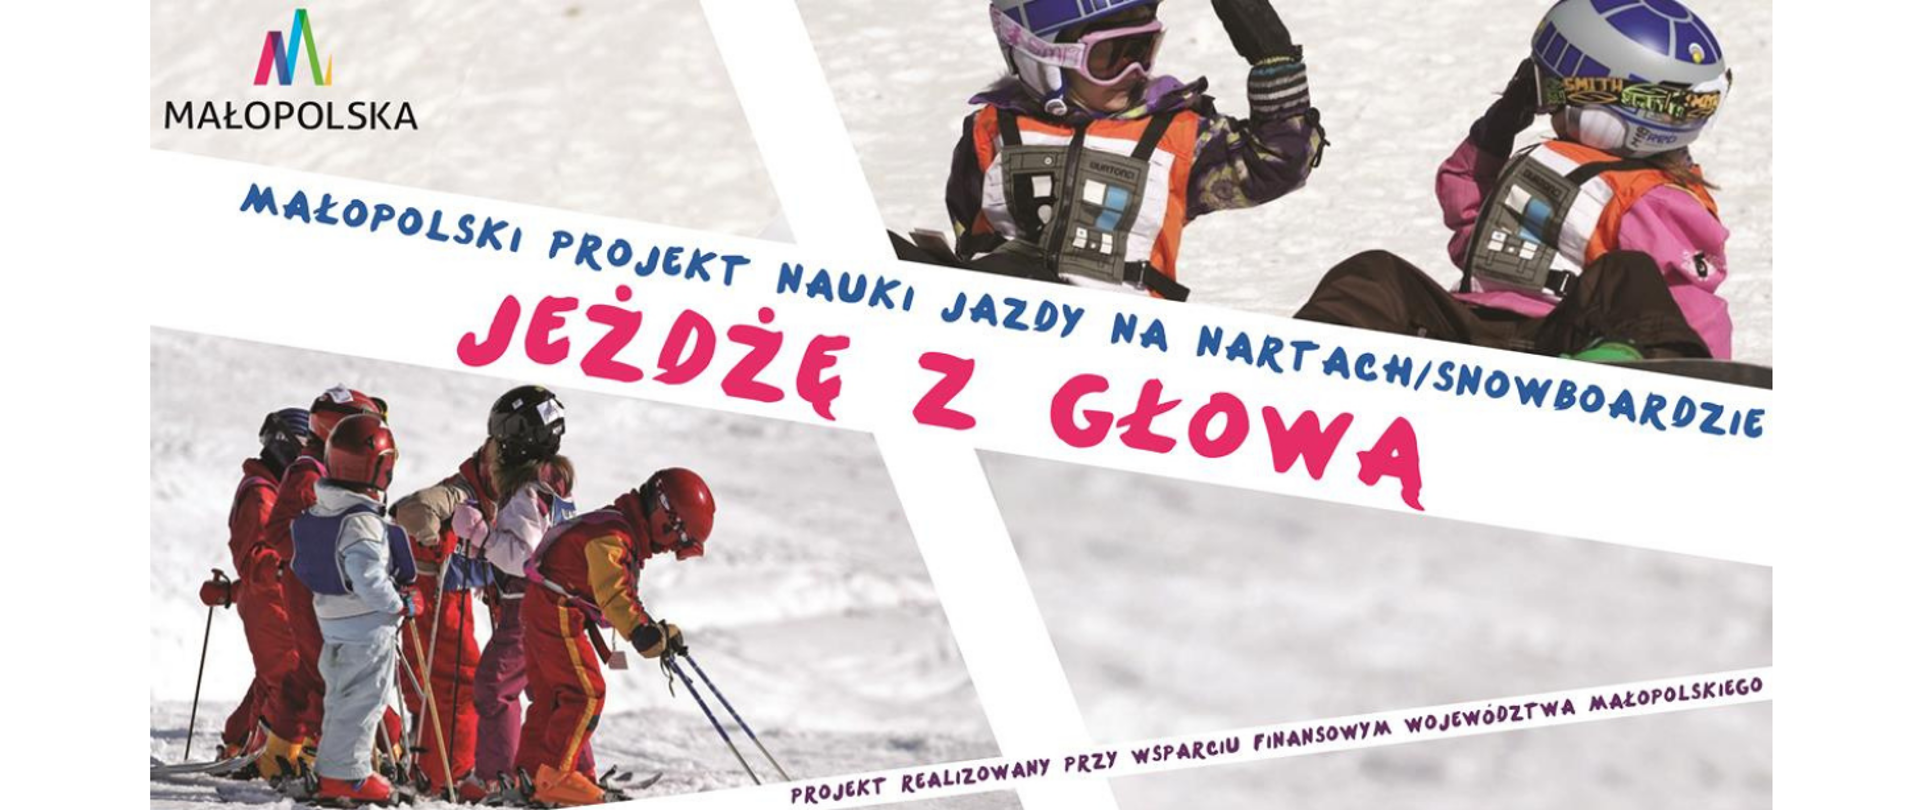 Małopolski projekt nauki jazdy na nartach/snowbordzie "Jeżdzę z głową"